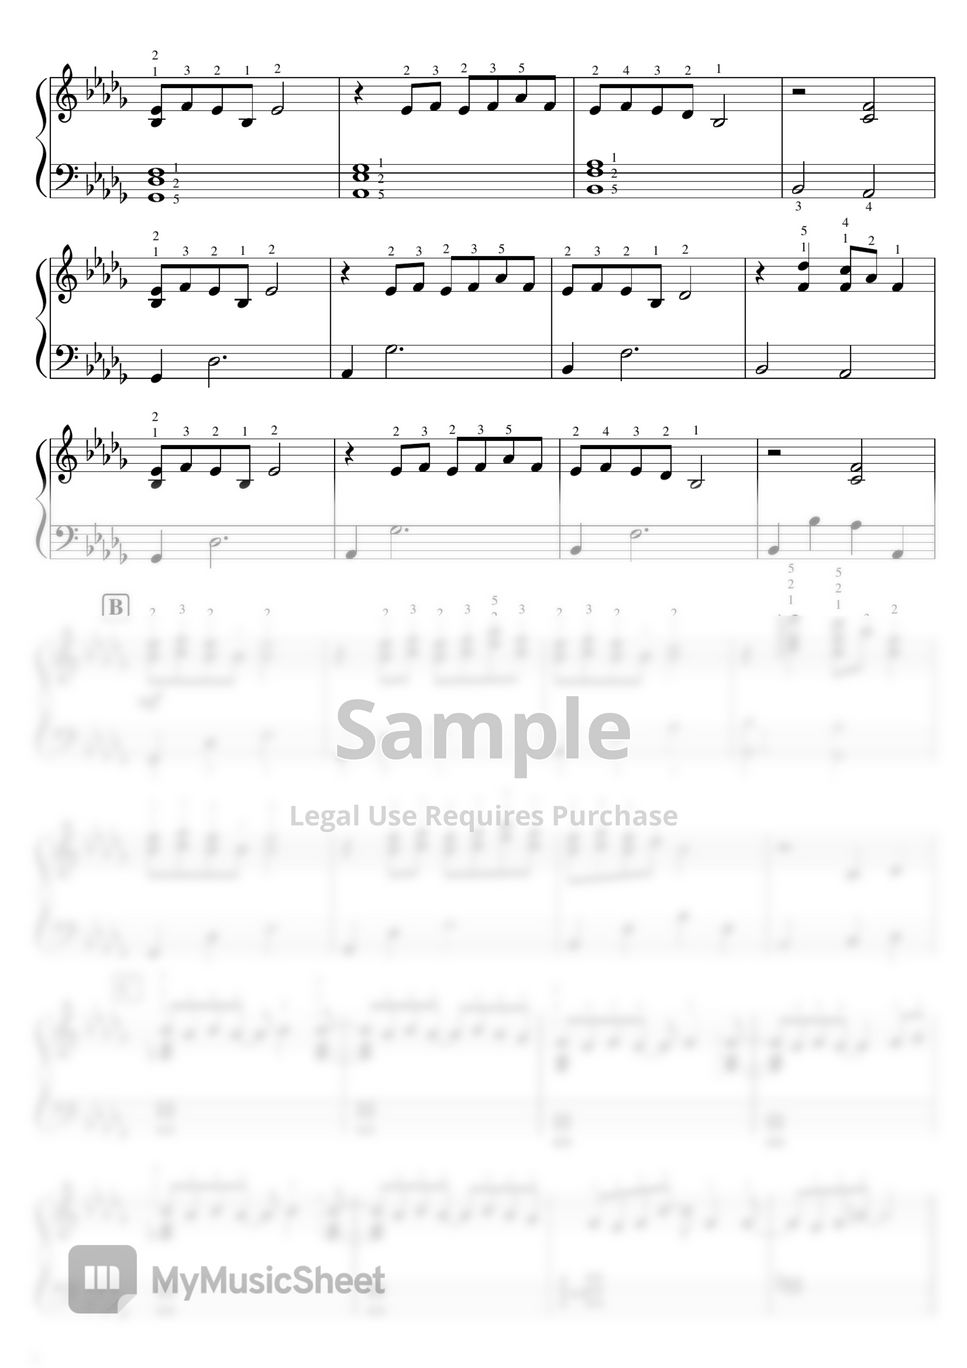 坂本龍一 - 【Beautiful】Merry Christmas Mr. Lawrence (坂本龍一) by ピアノのせんせいの楽譜集